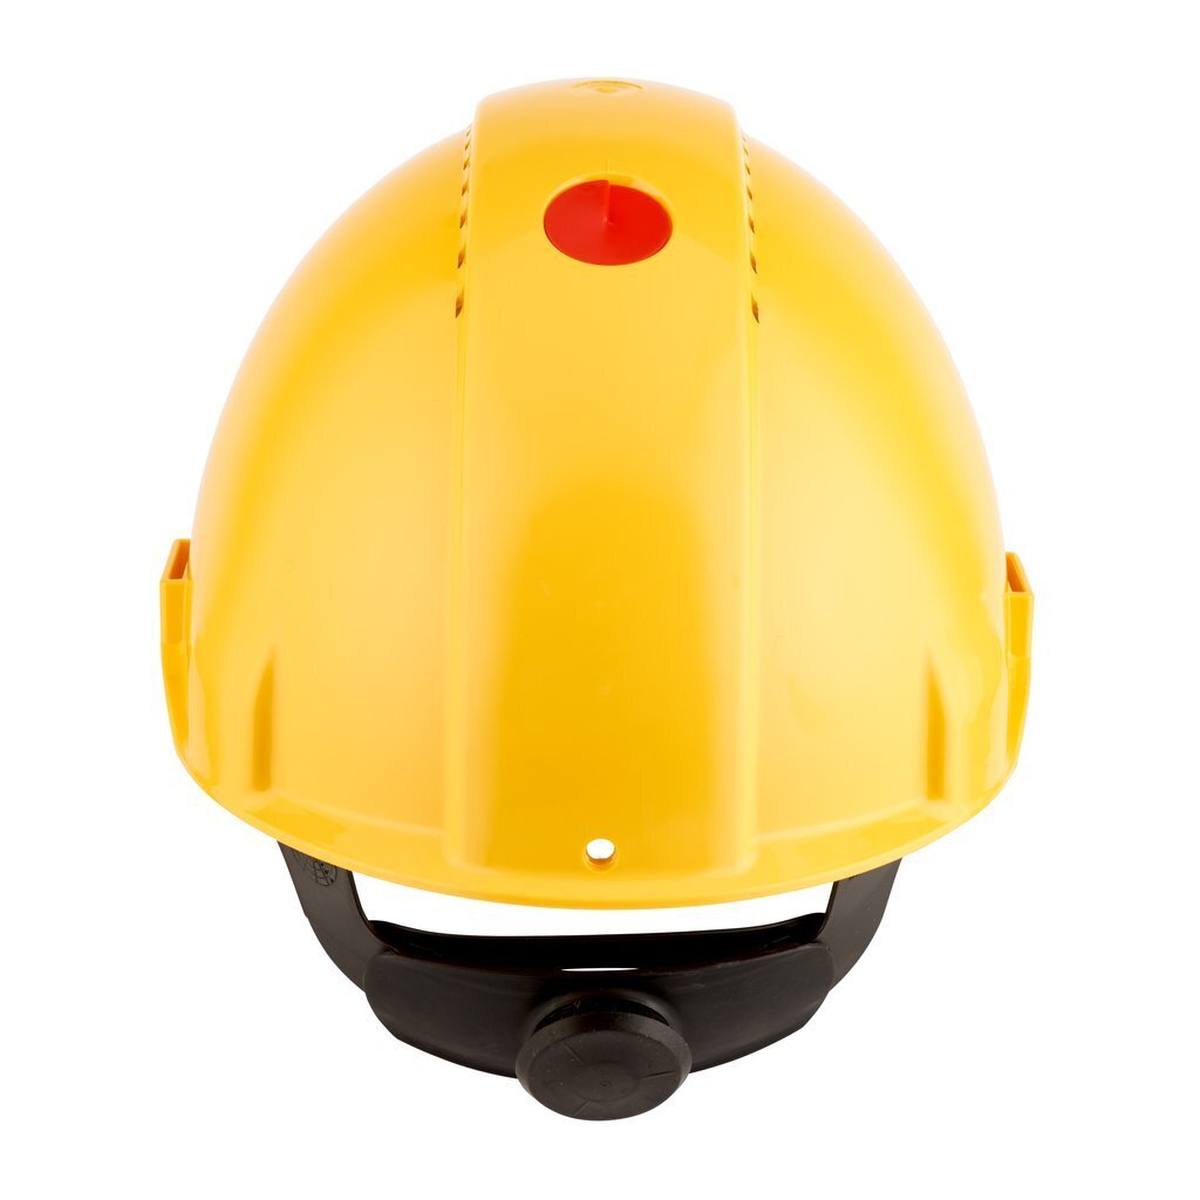 3M G3000 casque de protection G30NUY en jaune, ventilé, avec uvicator, cliquet et bande de soudure en plastique